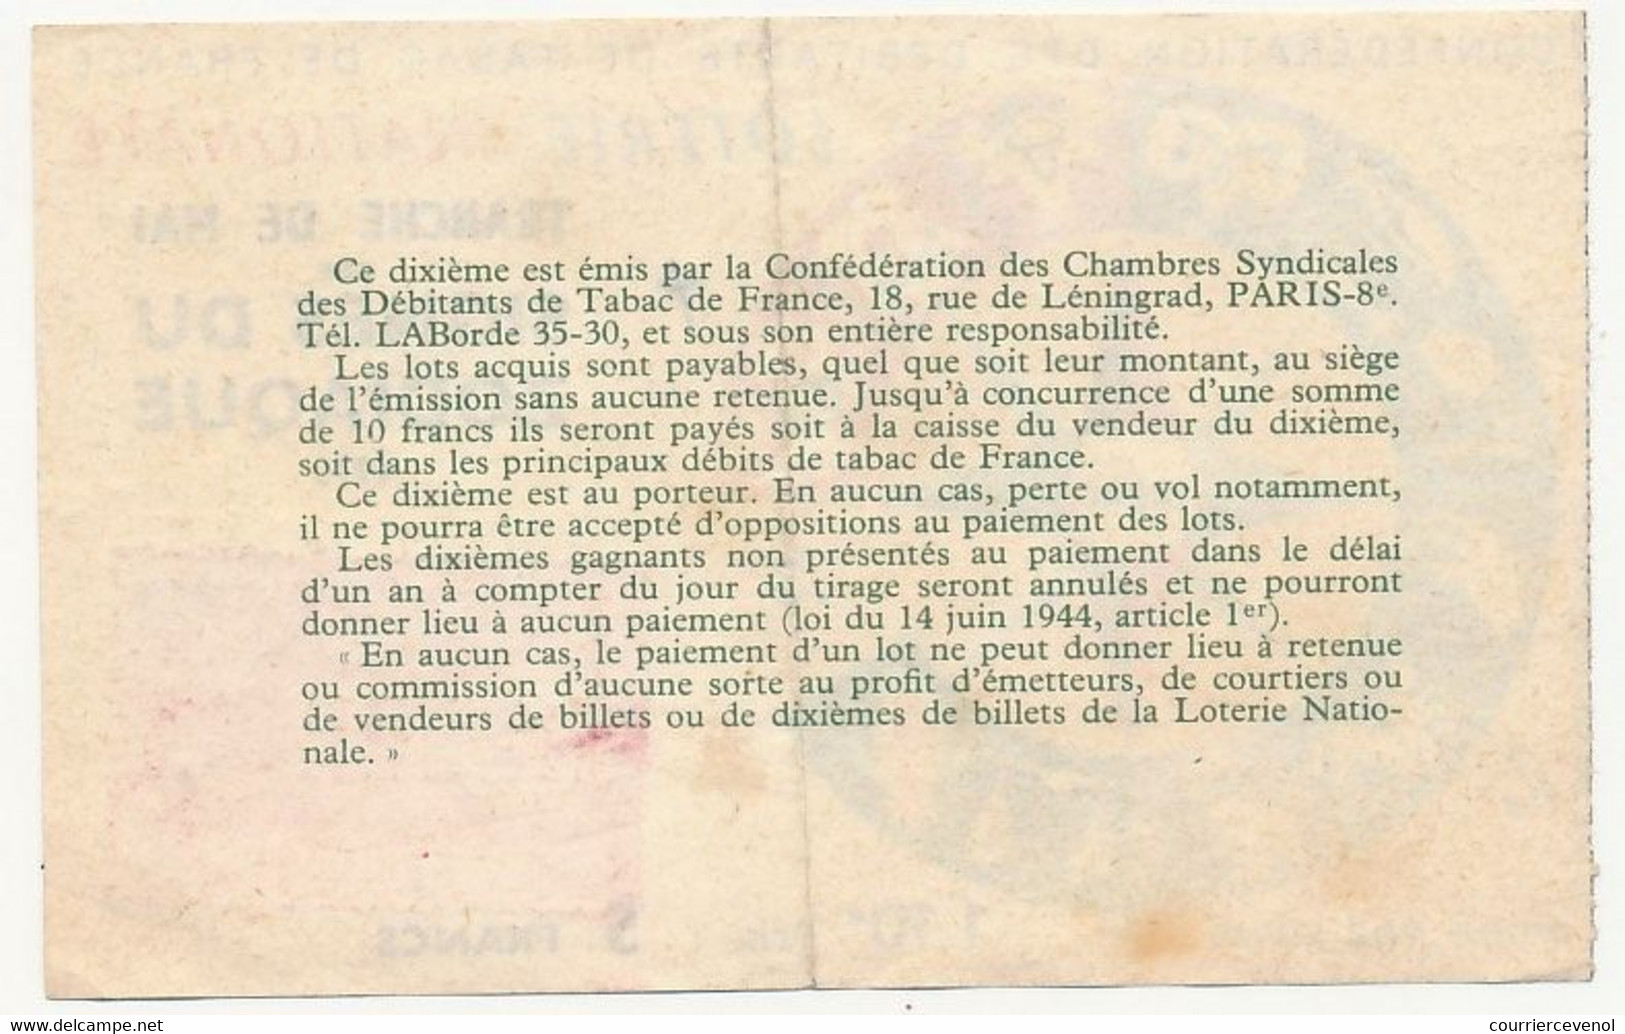 FRANCE - Loterie Nationale - 1/10ème - Confédération Débitants De Tabac - Tranche Signes Du Zodiaque 1970 - Billets De Loterie